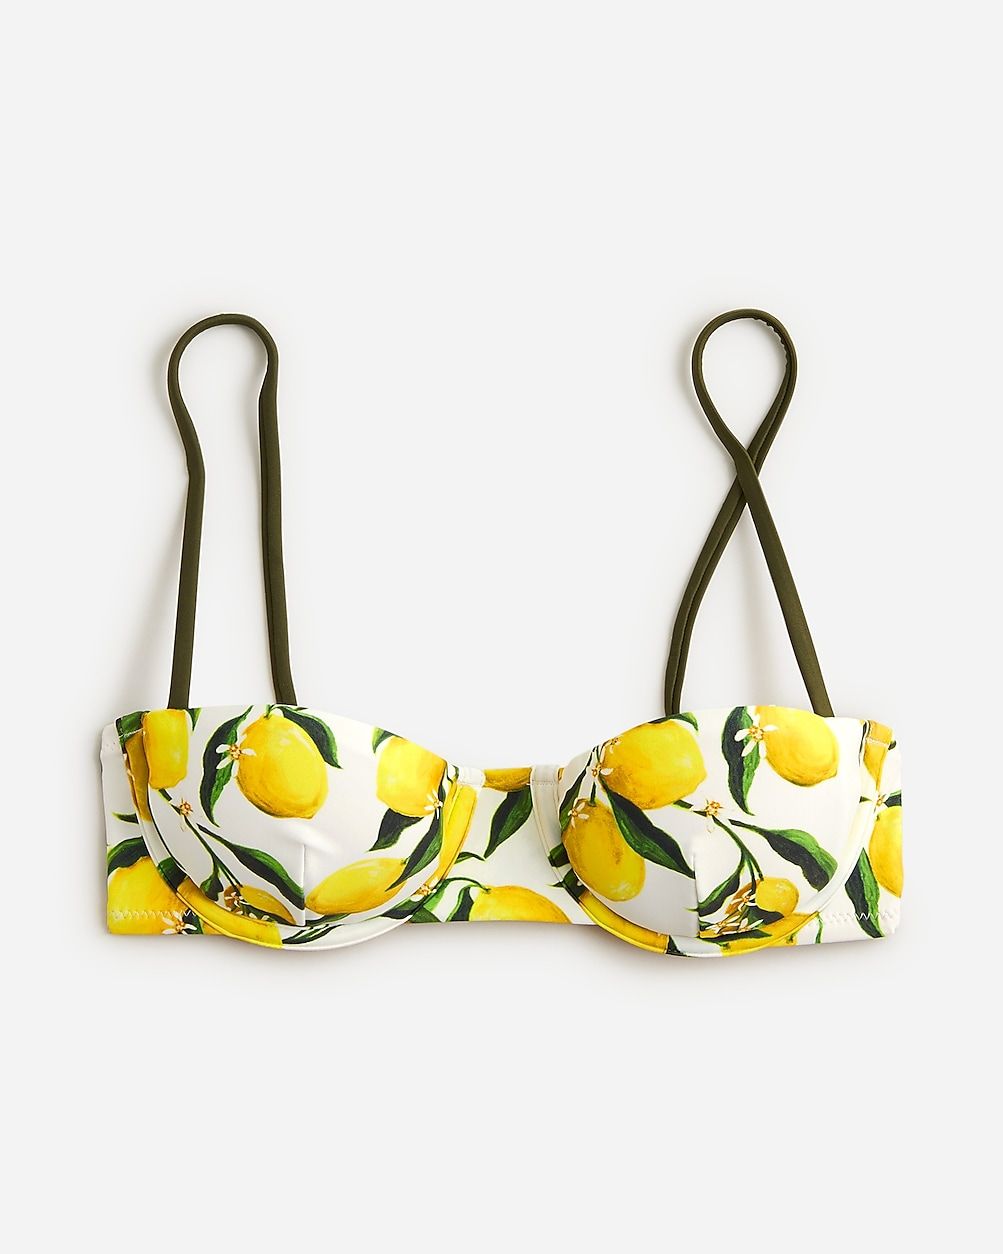 Balconette underwire bikini top in limoncello | J.Crew US